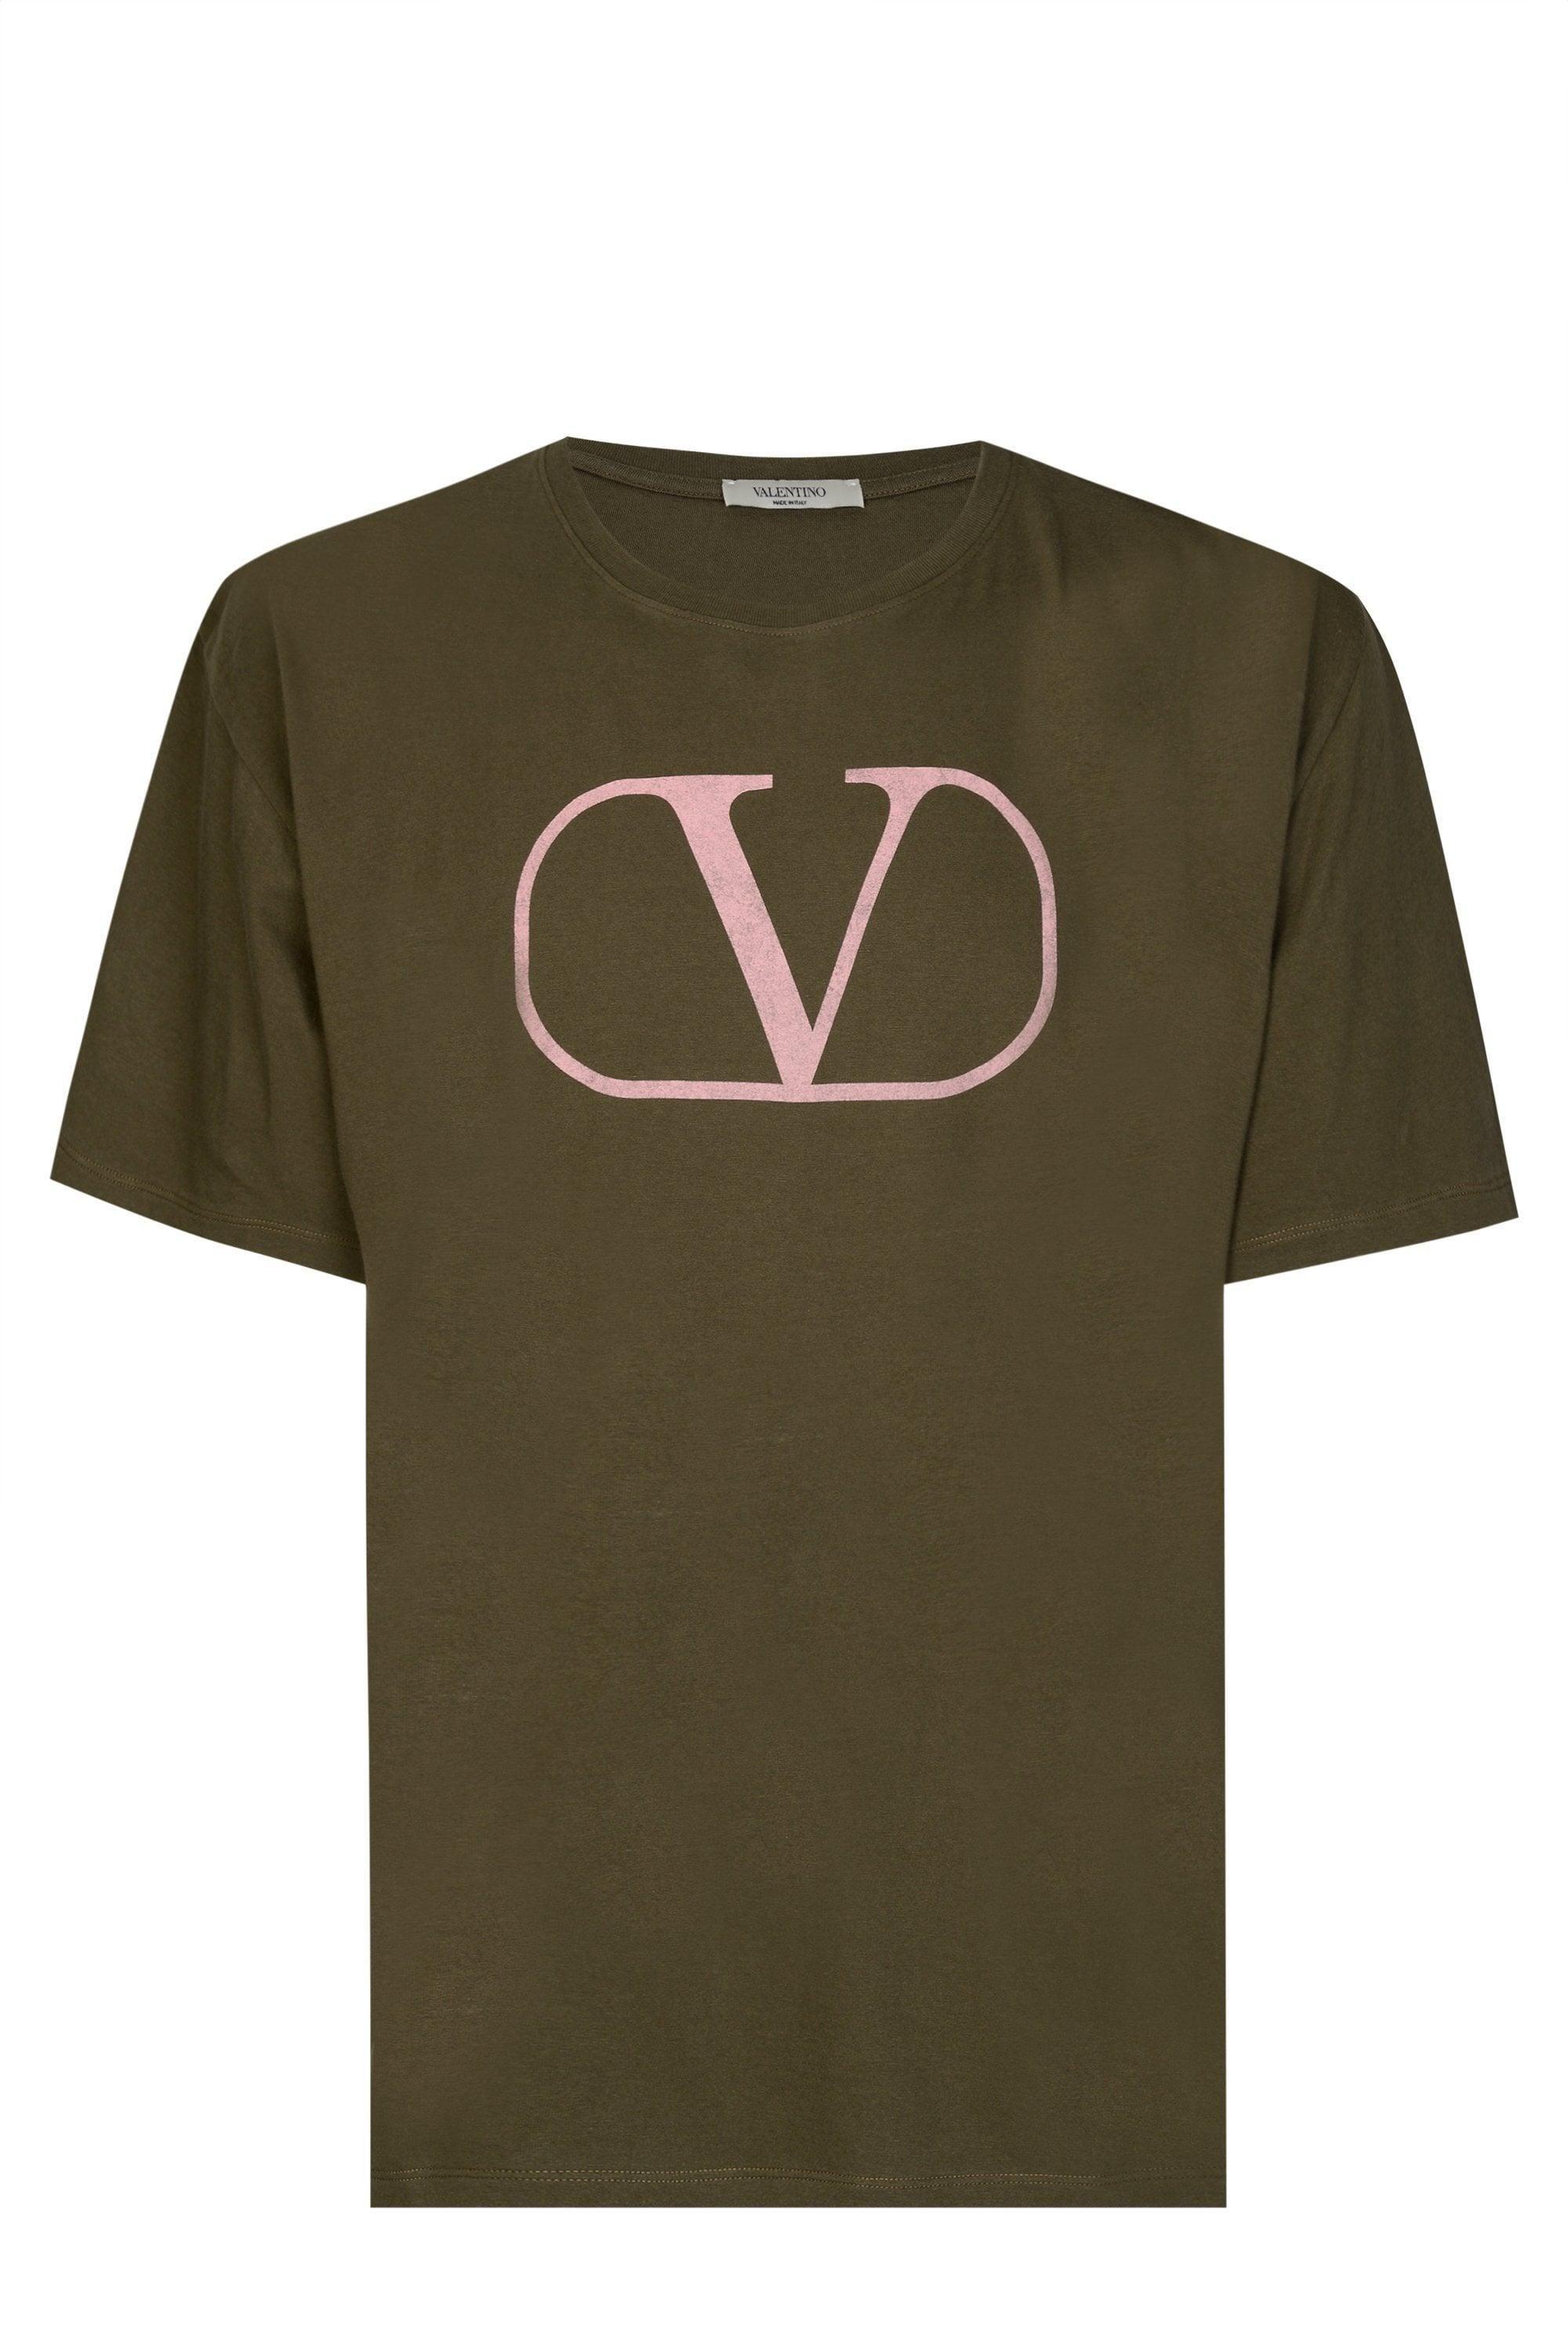 V Clothing Logo